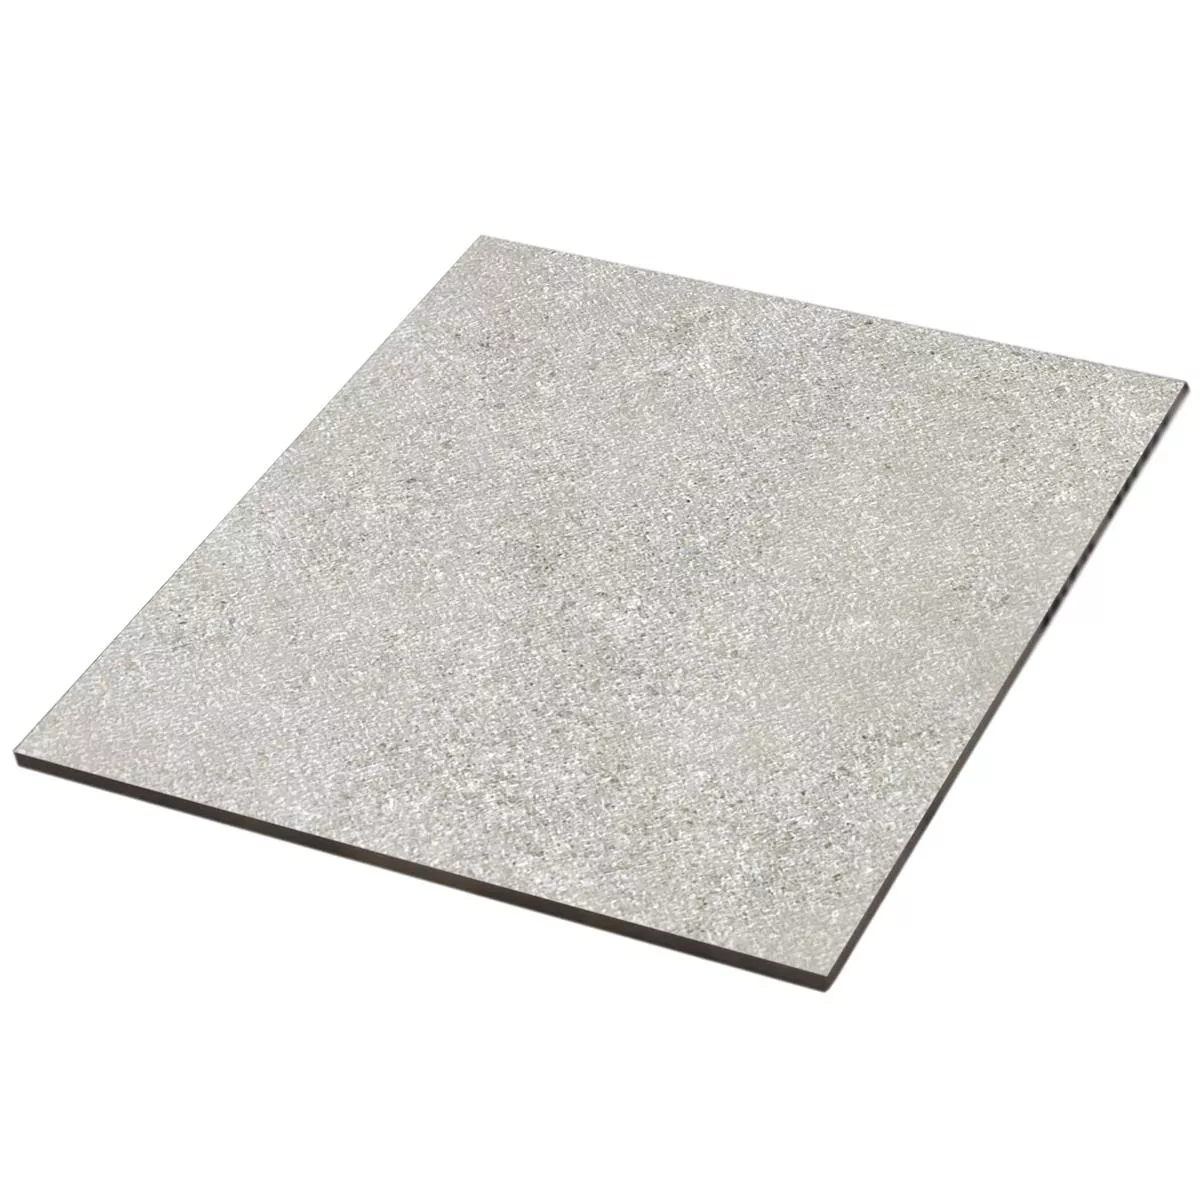 Sample Floor Tiles Galilea Unglazed R10B Grey 60x60cm